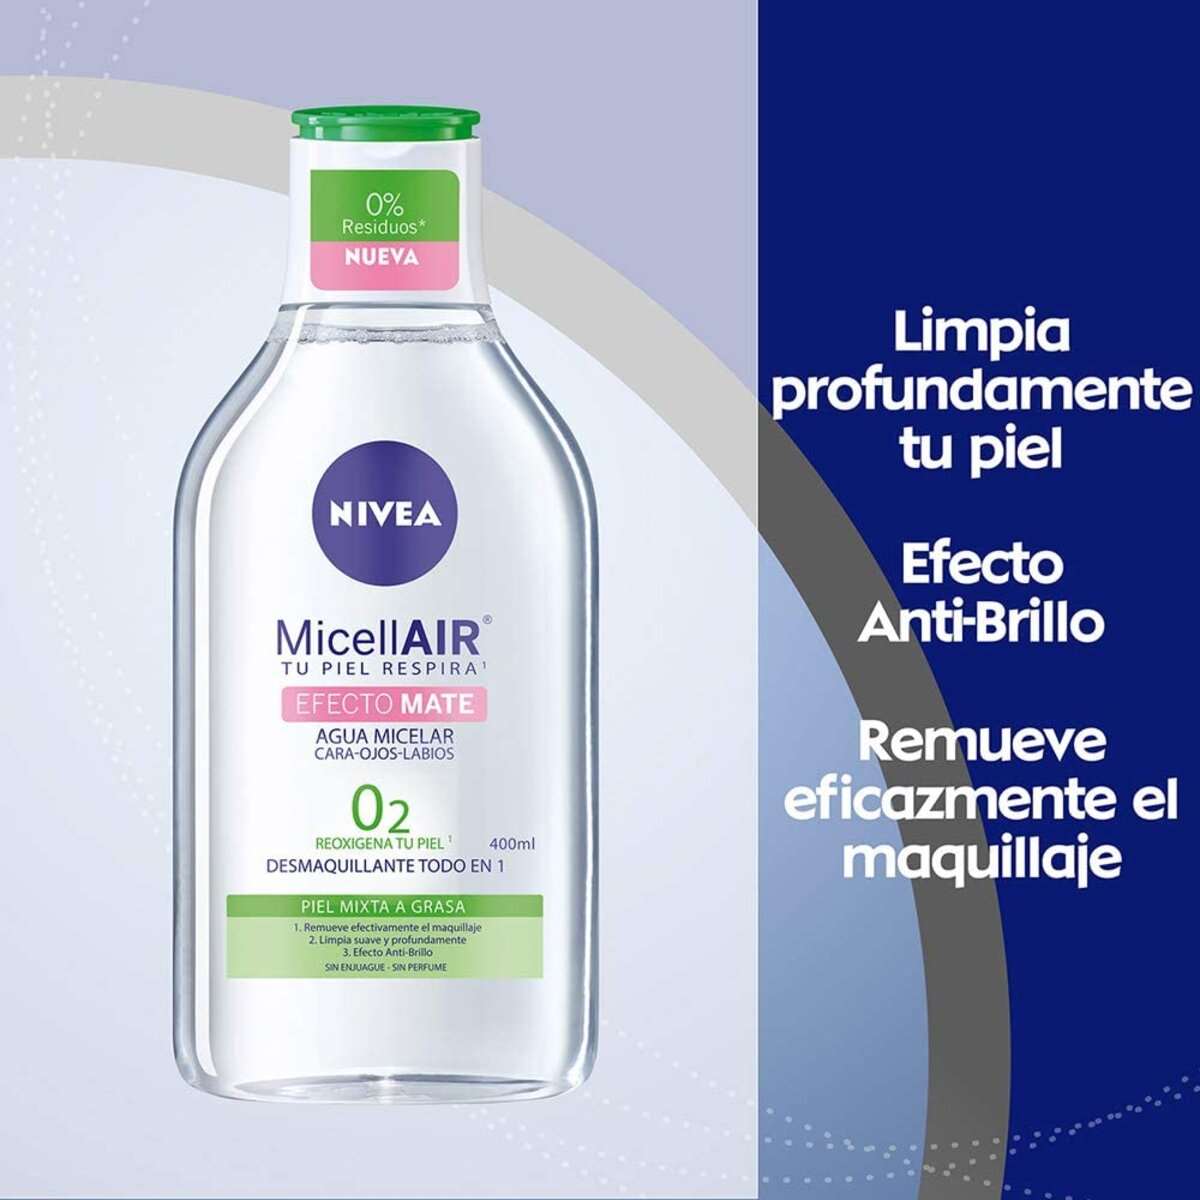 Agua Micelar L'oréal Paris Para Piel Mixta A Grasa - 400ml